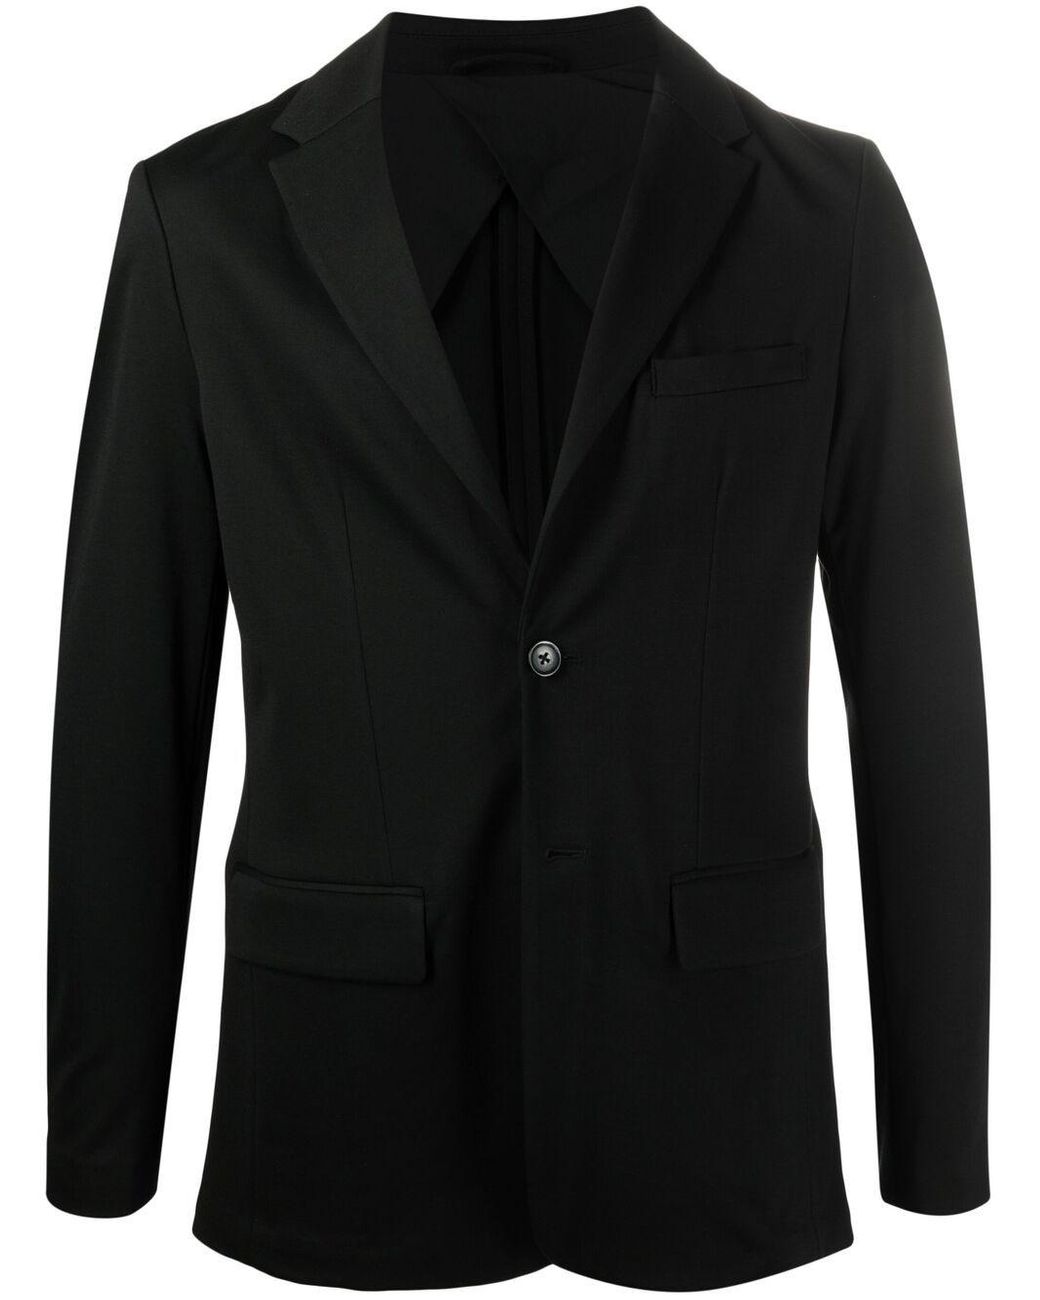 Emporio Armani Classic Single-breasted Blazer in Black for Men - Save ...